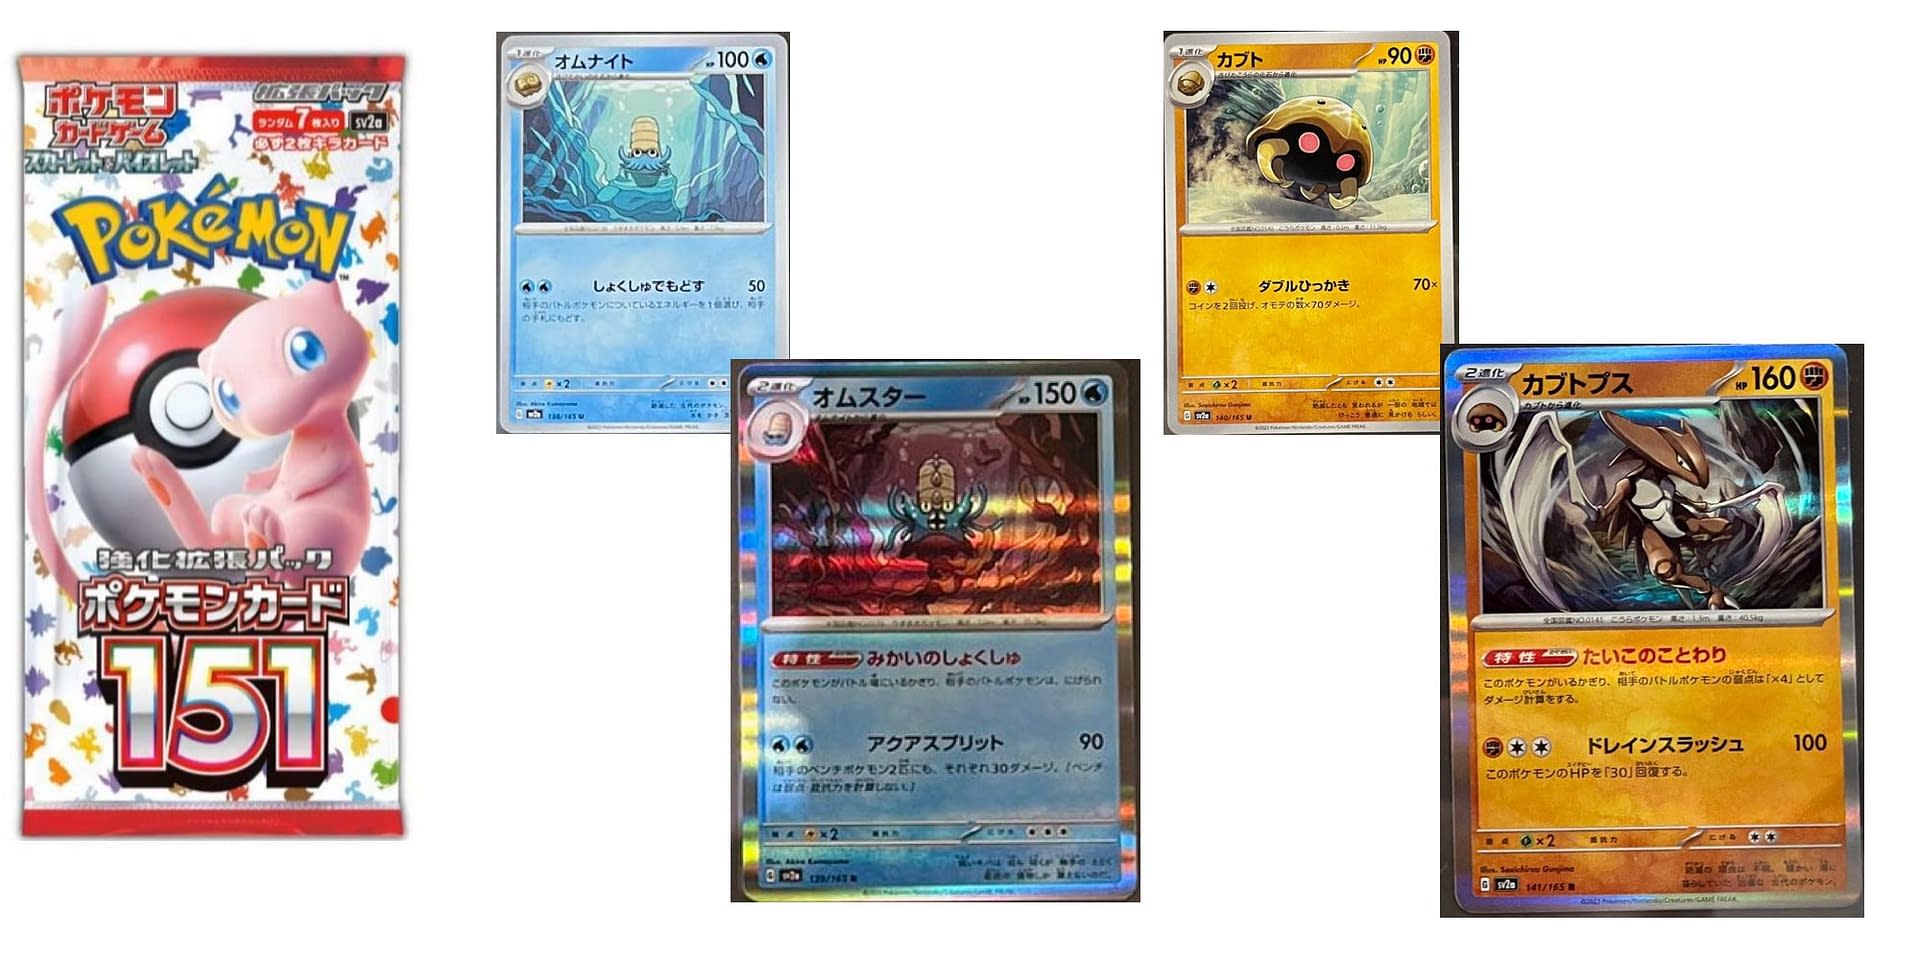 A família alada de Kanto e muitas outras cartas reveladas em Pokémon Card  151!